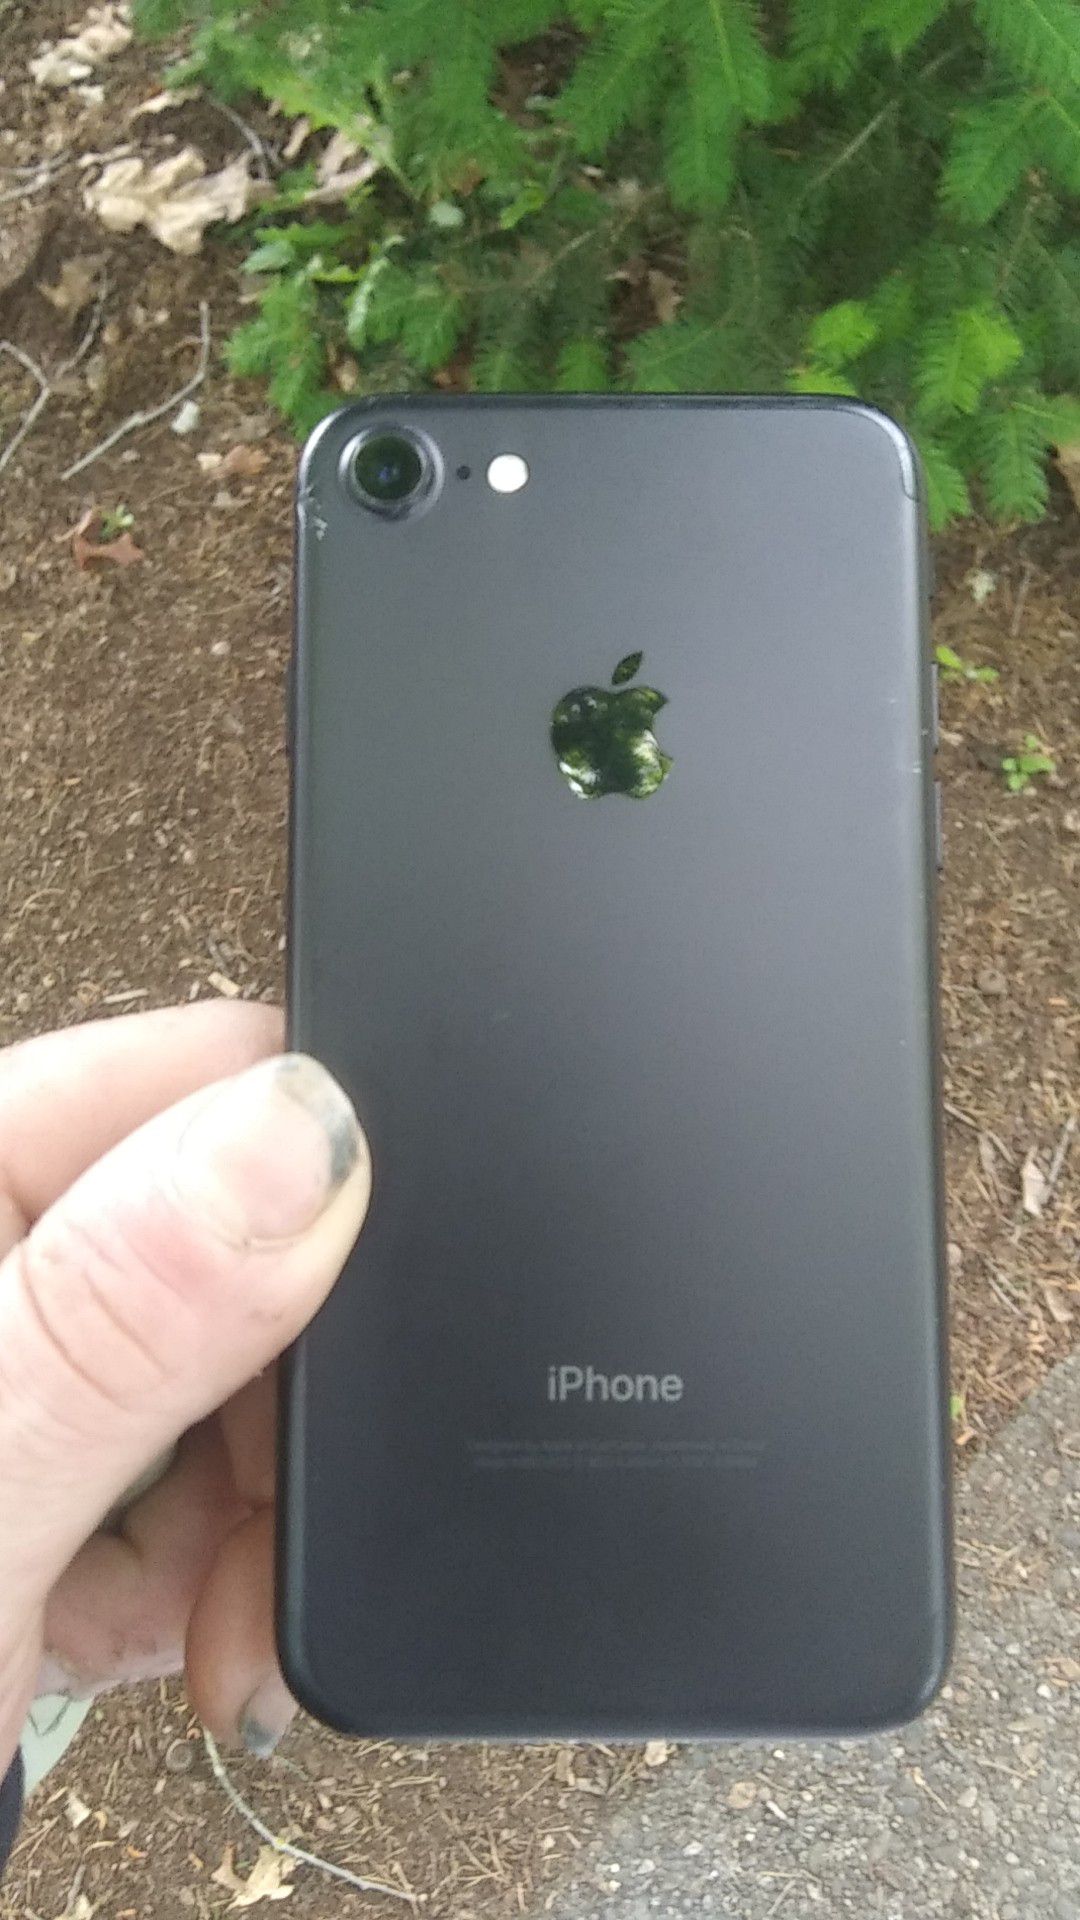 Matte black iPhone 8 32GBvery clean NOT ICLOUD LOCKED